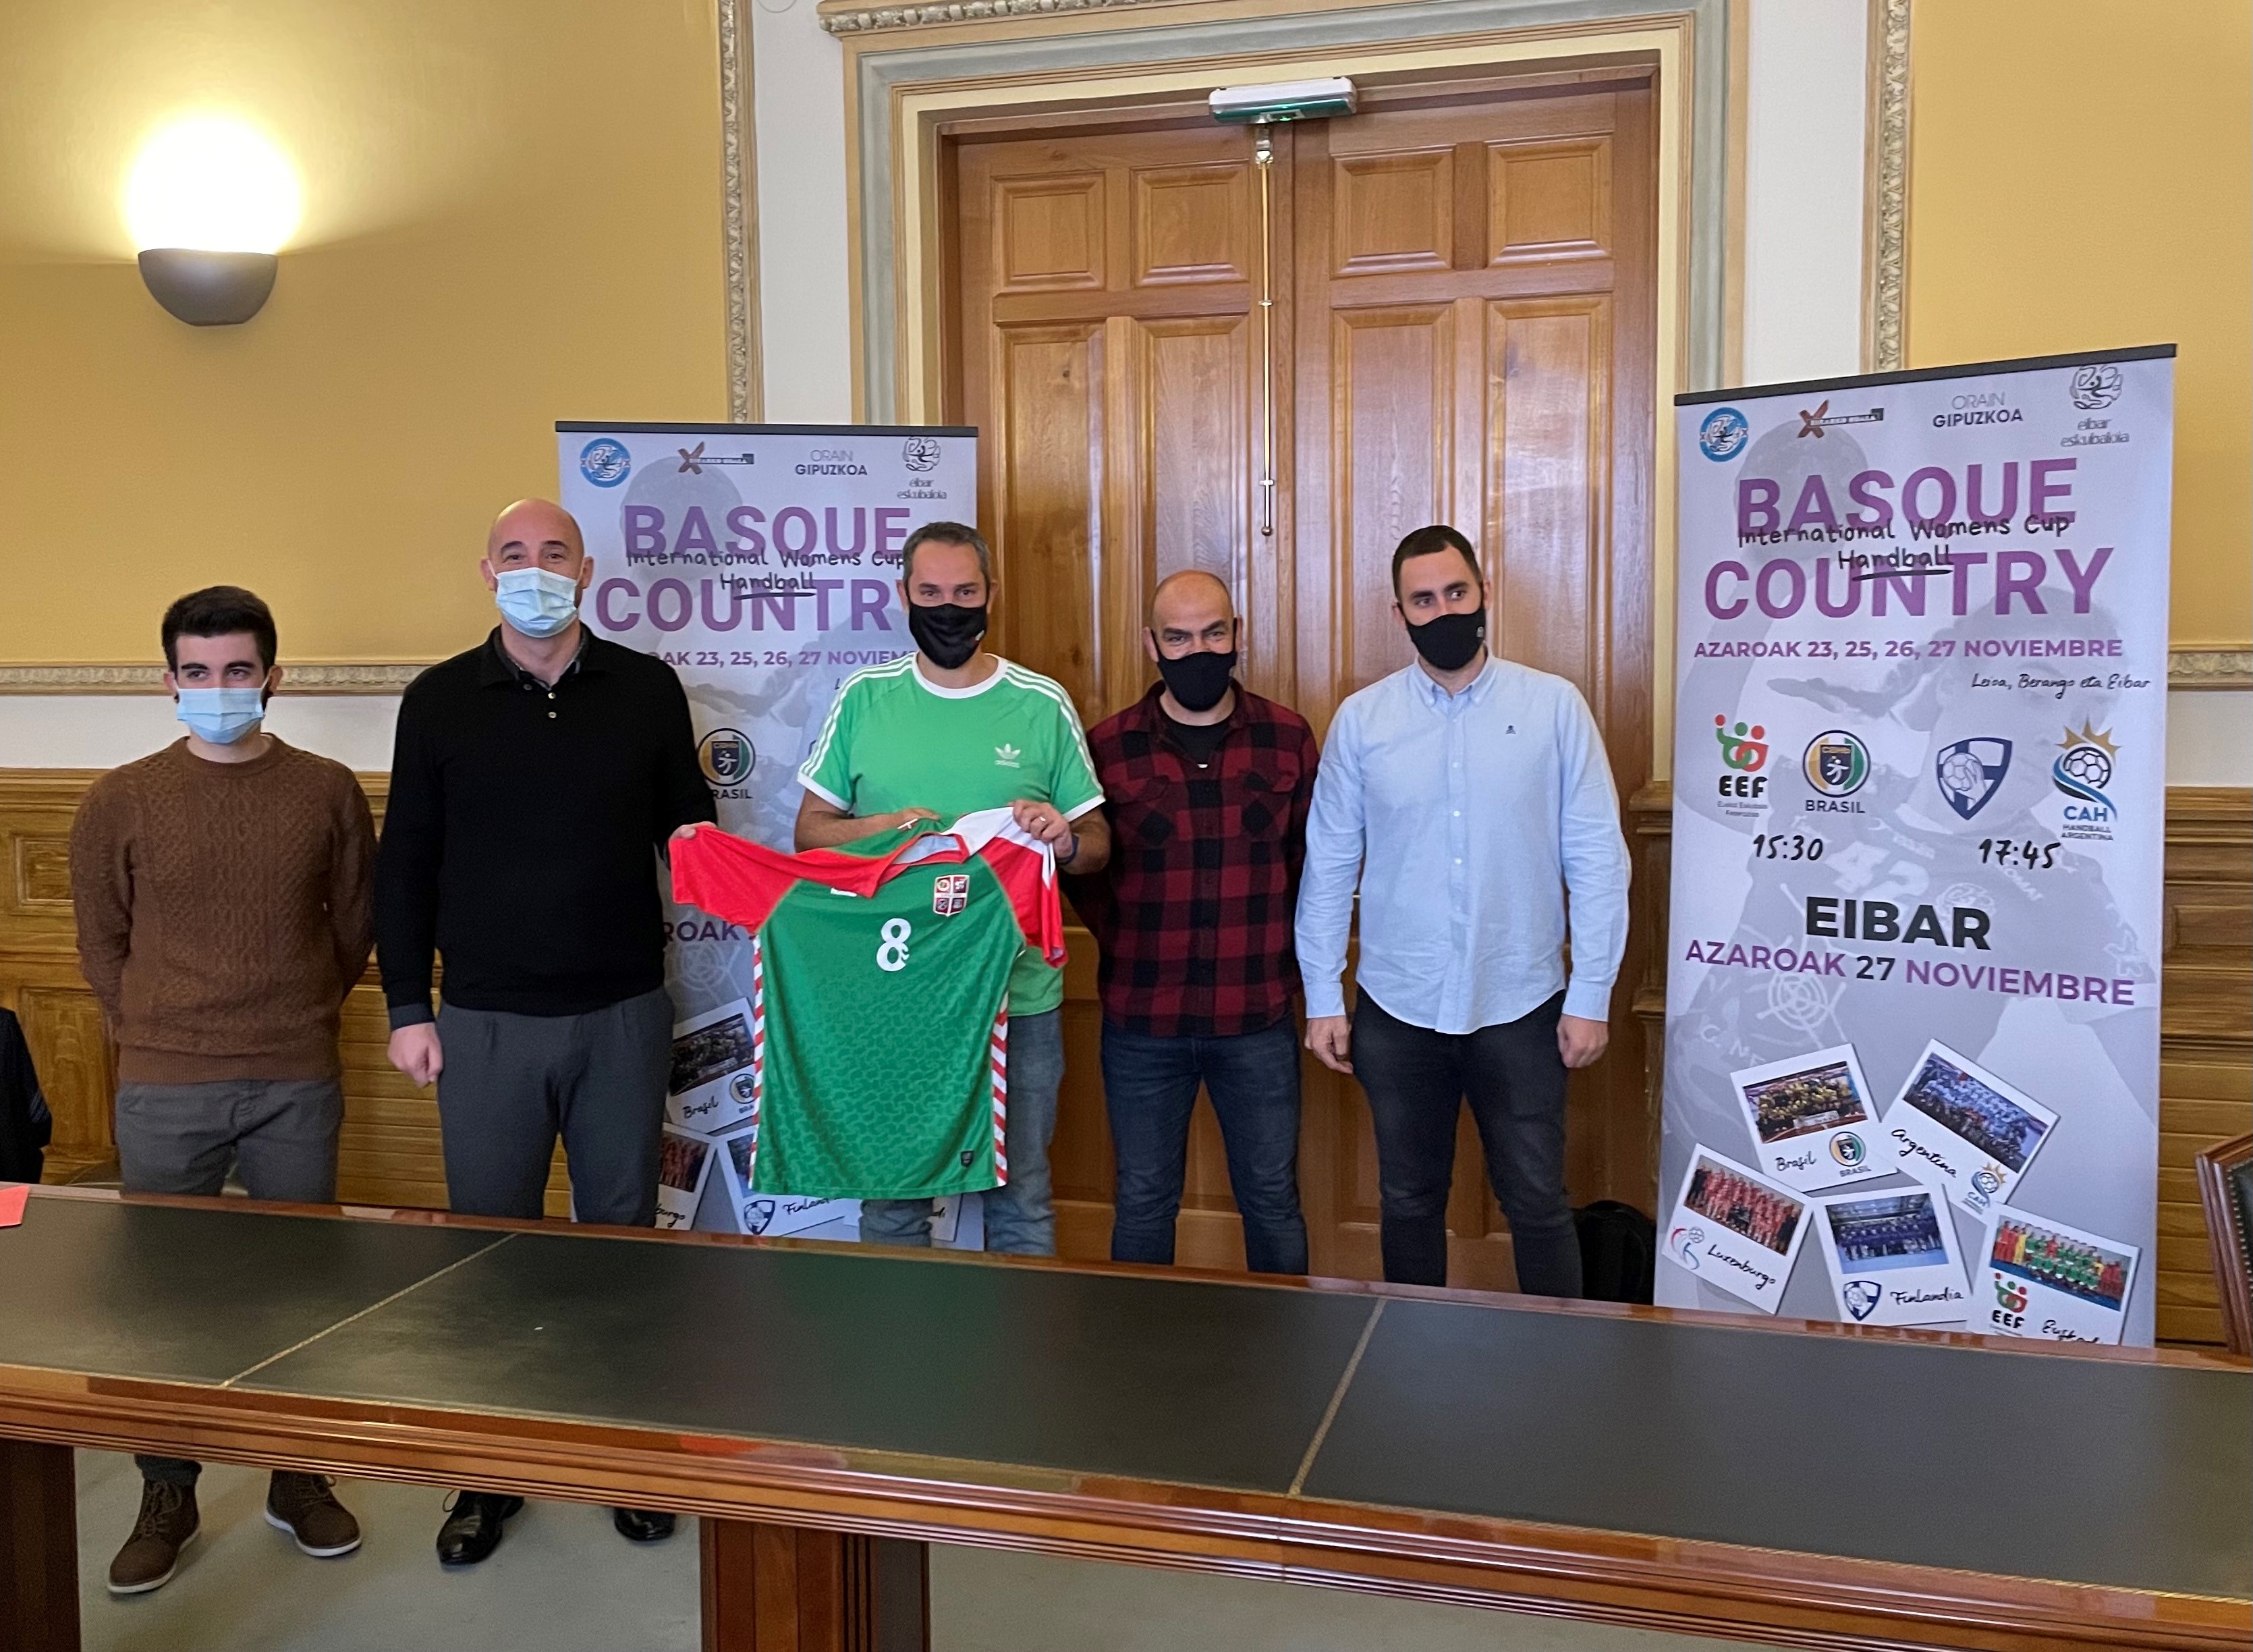 Eibar acogerá el torneo de balonmano femenino "Basque Country International Women's Cup" el próximo 27 de noviembre